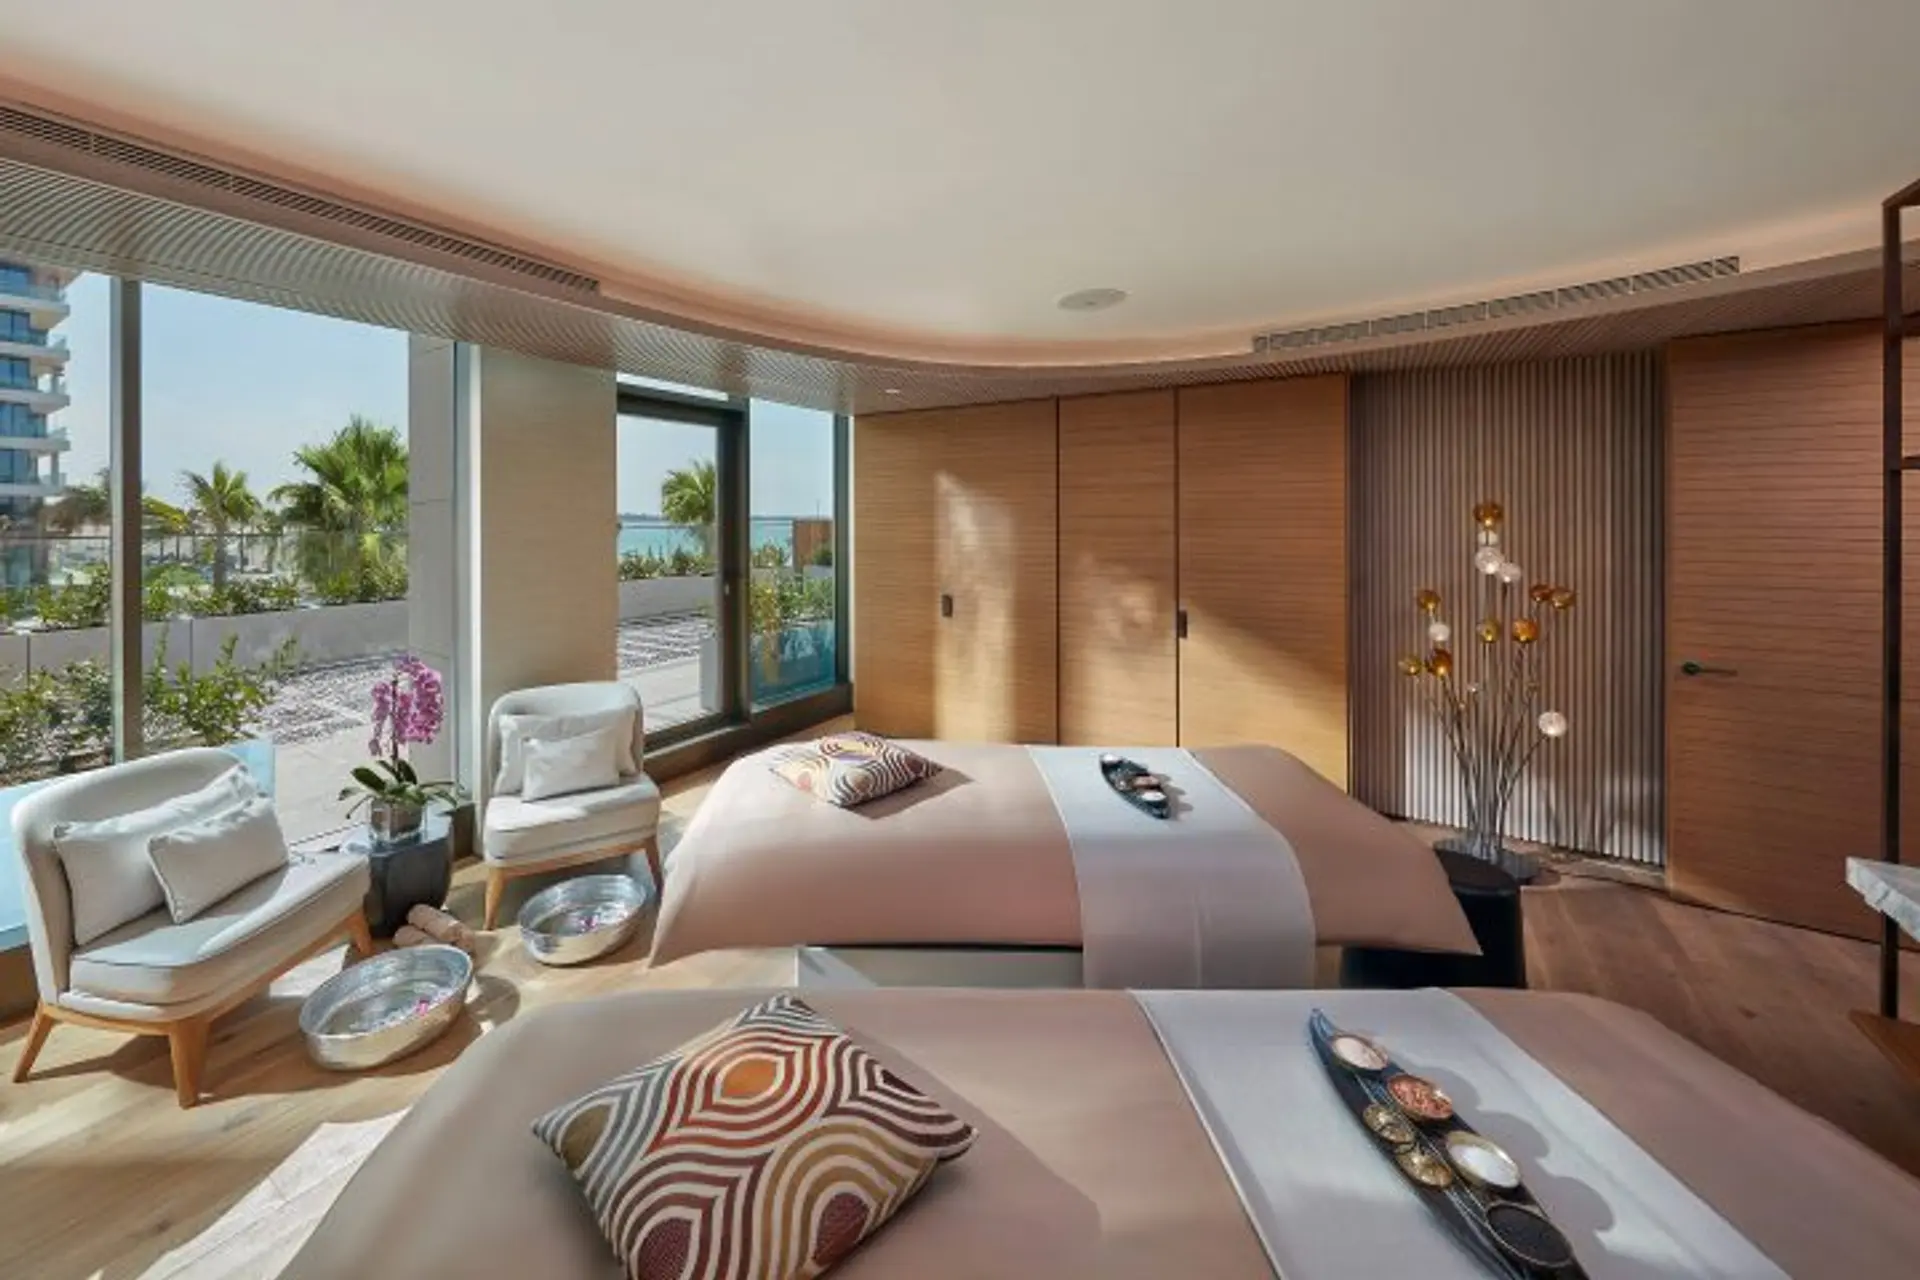 Hotels News - Mandarin Oriental opens elegant beachfront hotel in Dubai